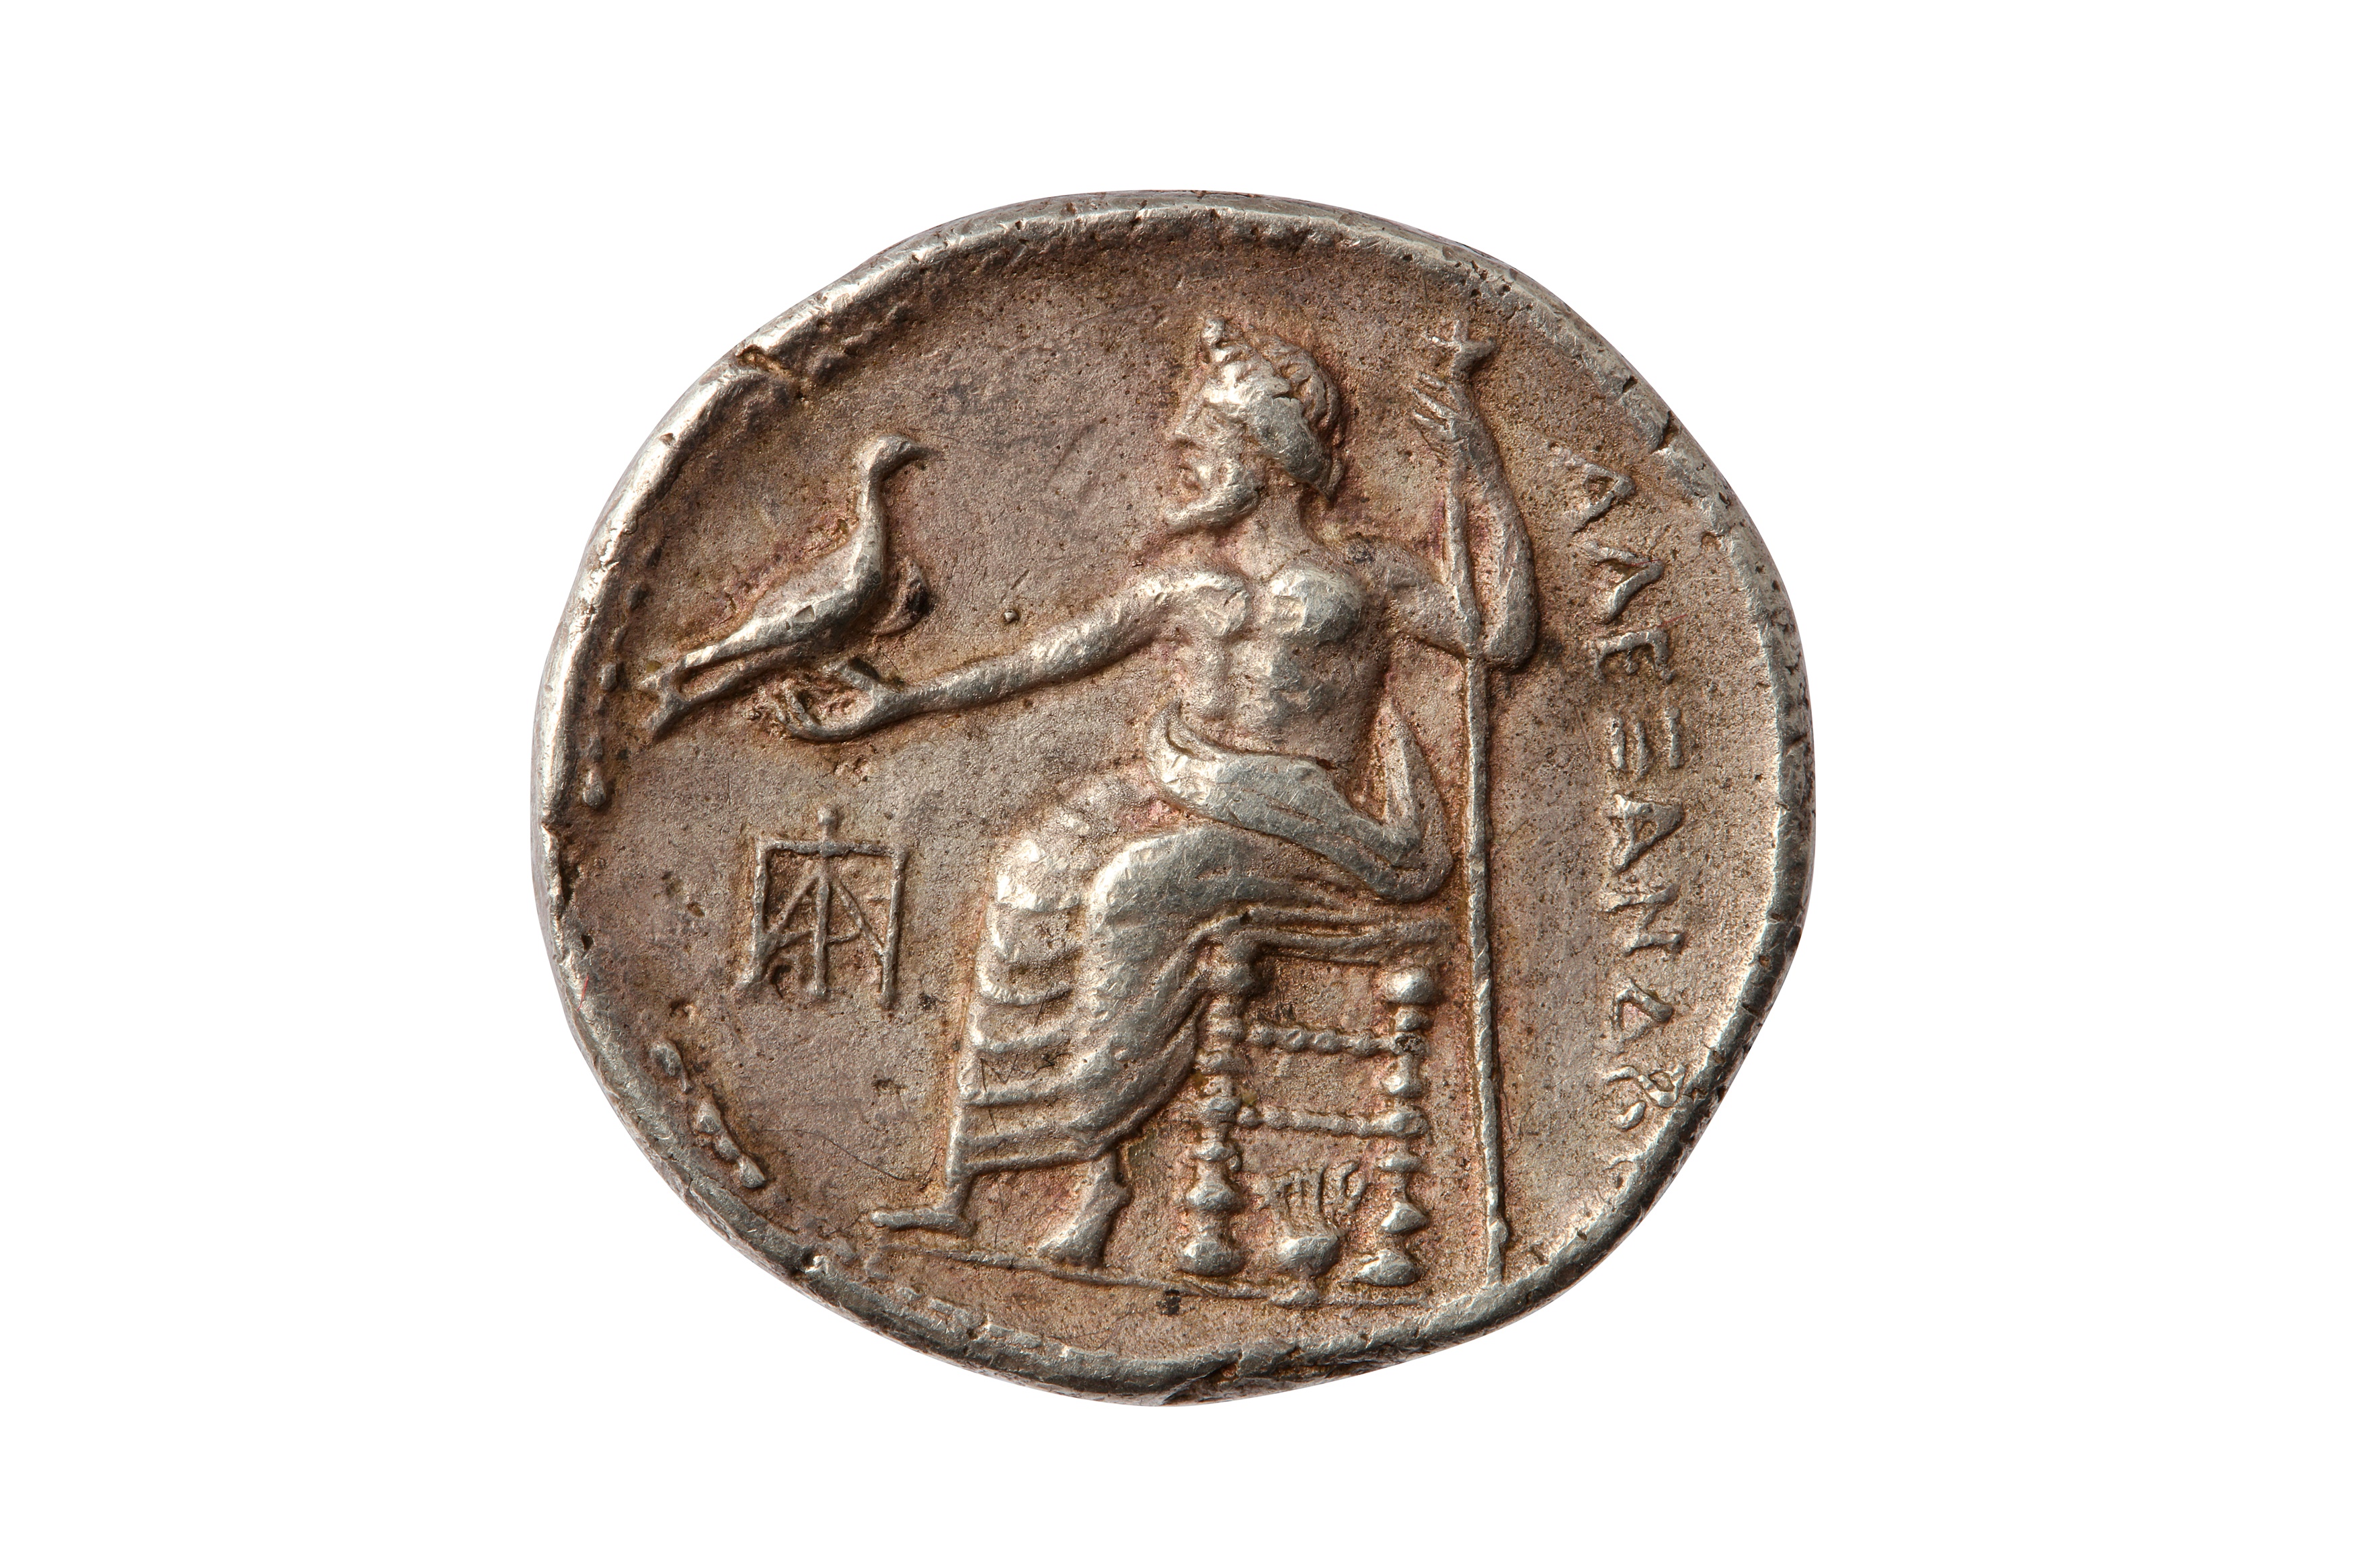 NIKOKLES OF PAPHOS (325 - 311/309 B.C), PAPHOS MINT TETRADRACHM. - Image 2 of 2